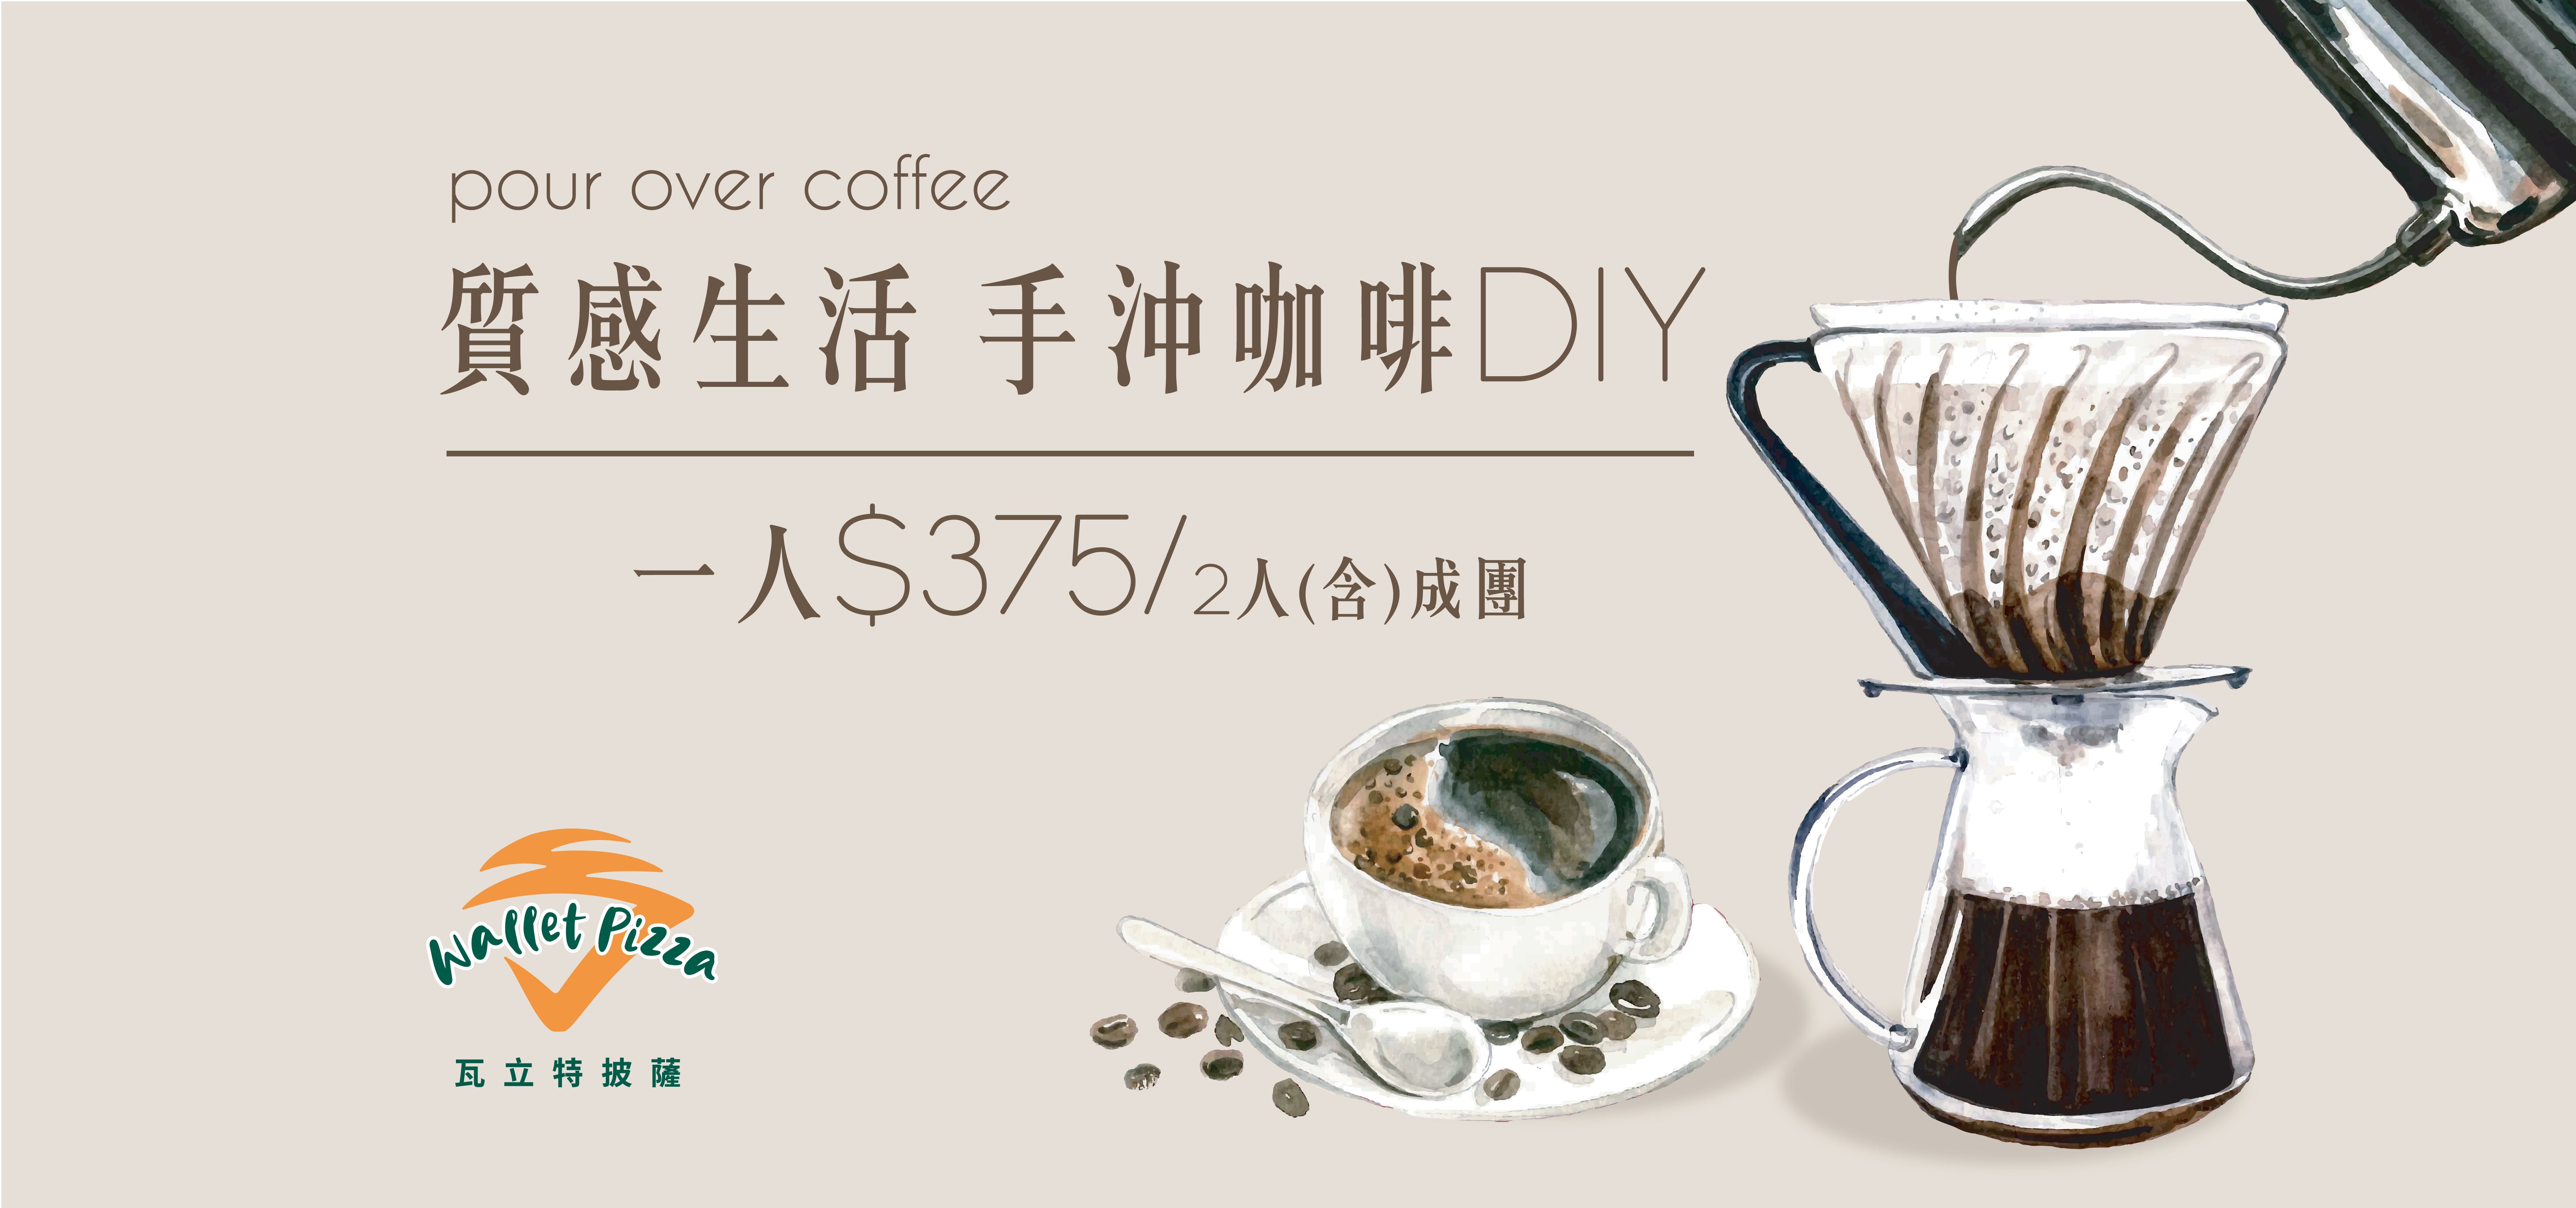 【DIY課程】DIY手沖咖啡